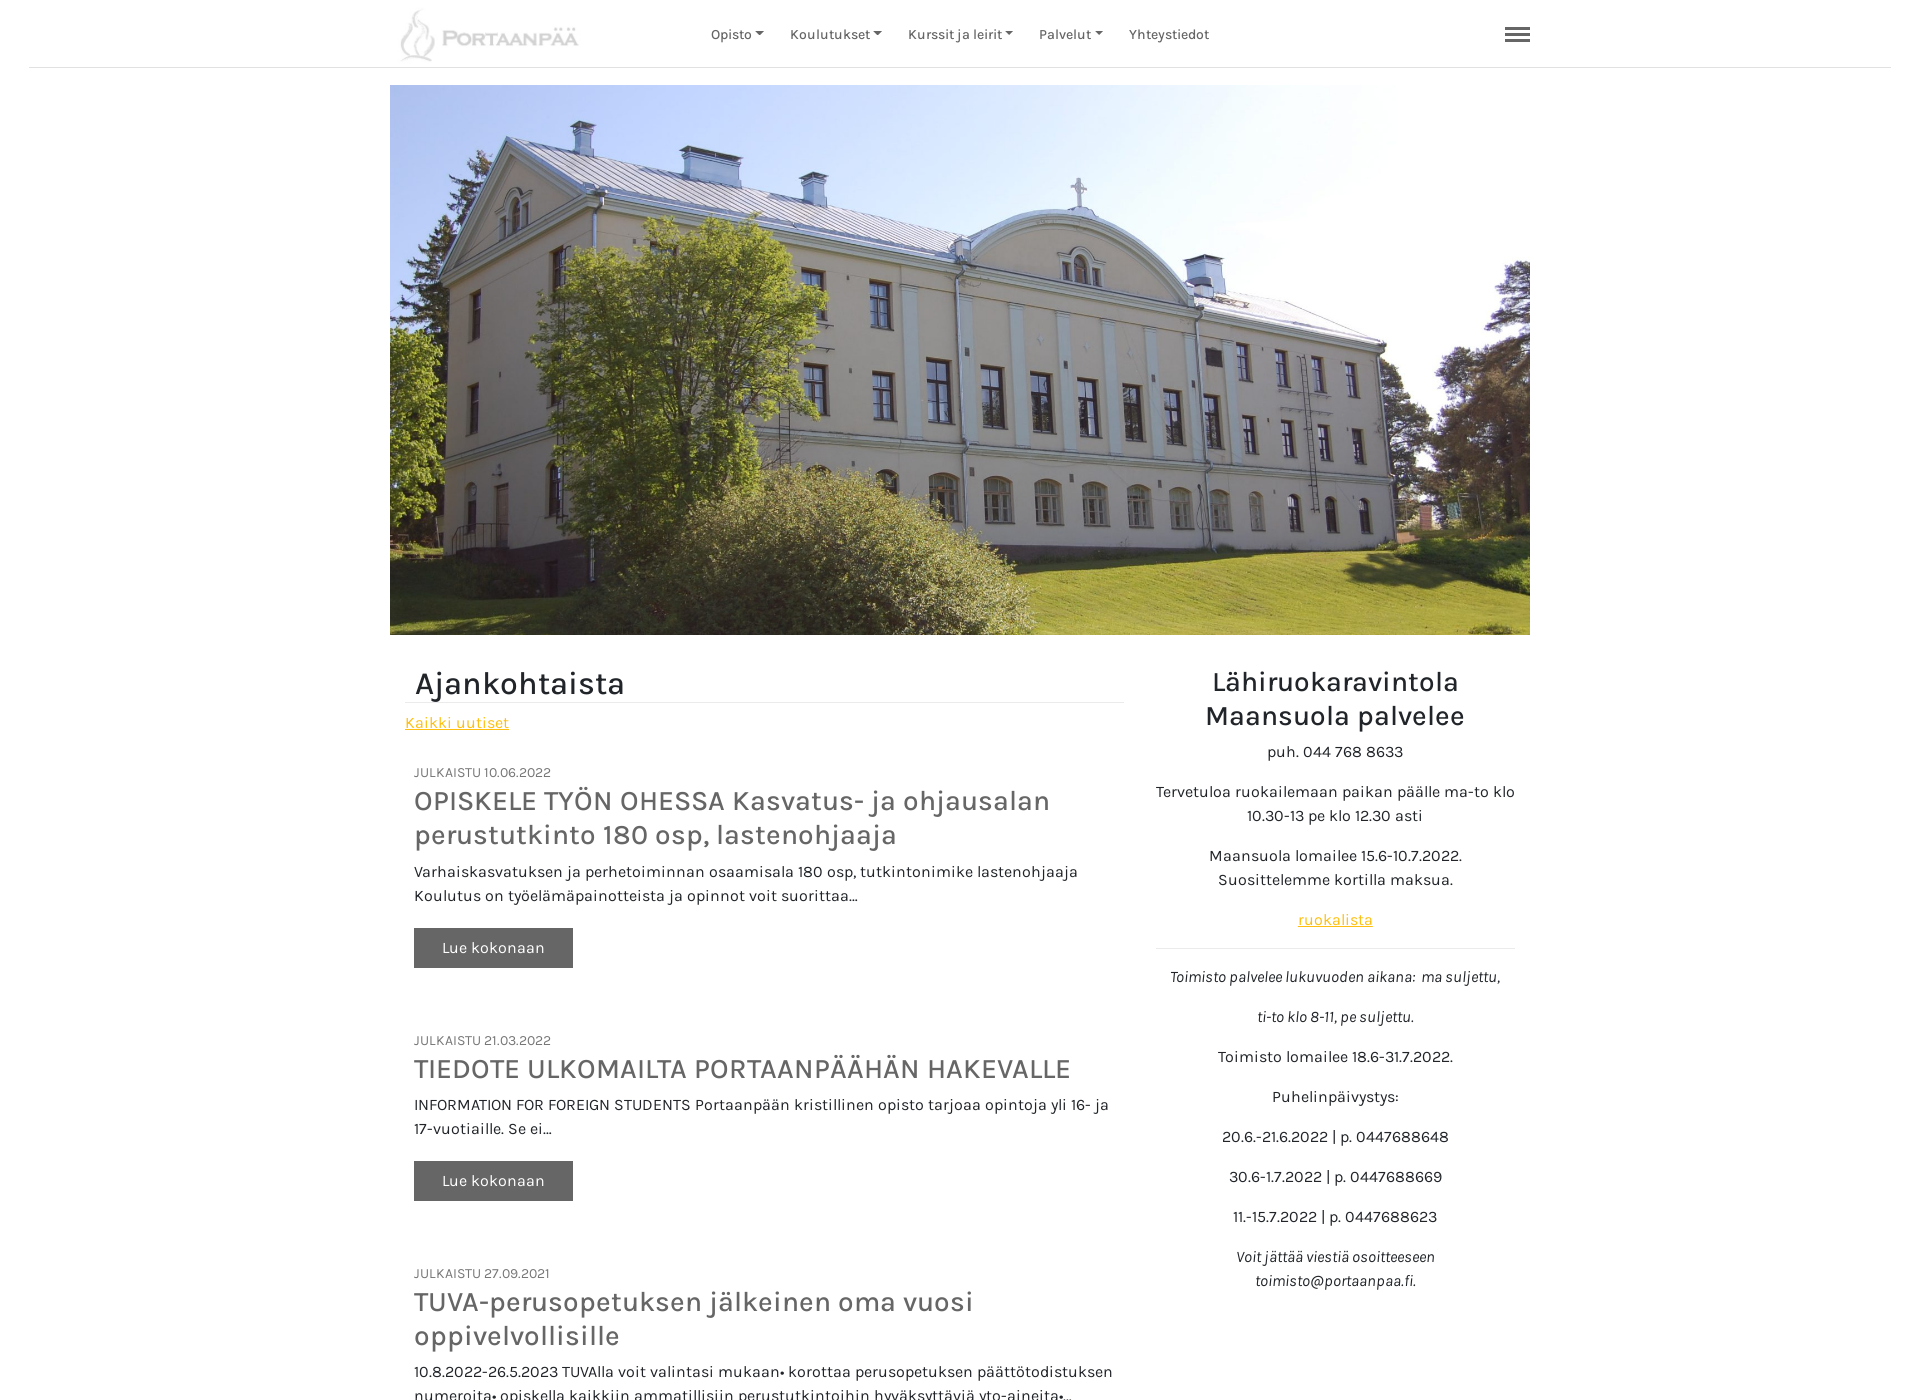 Skärmdump för portaanpaa.fi